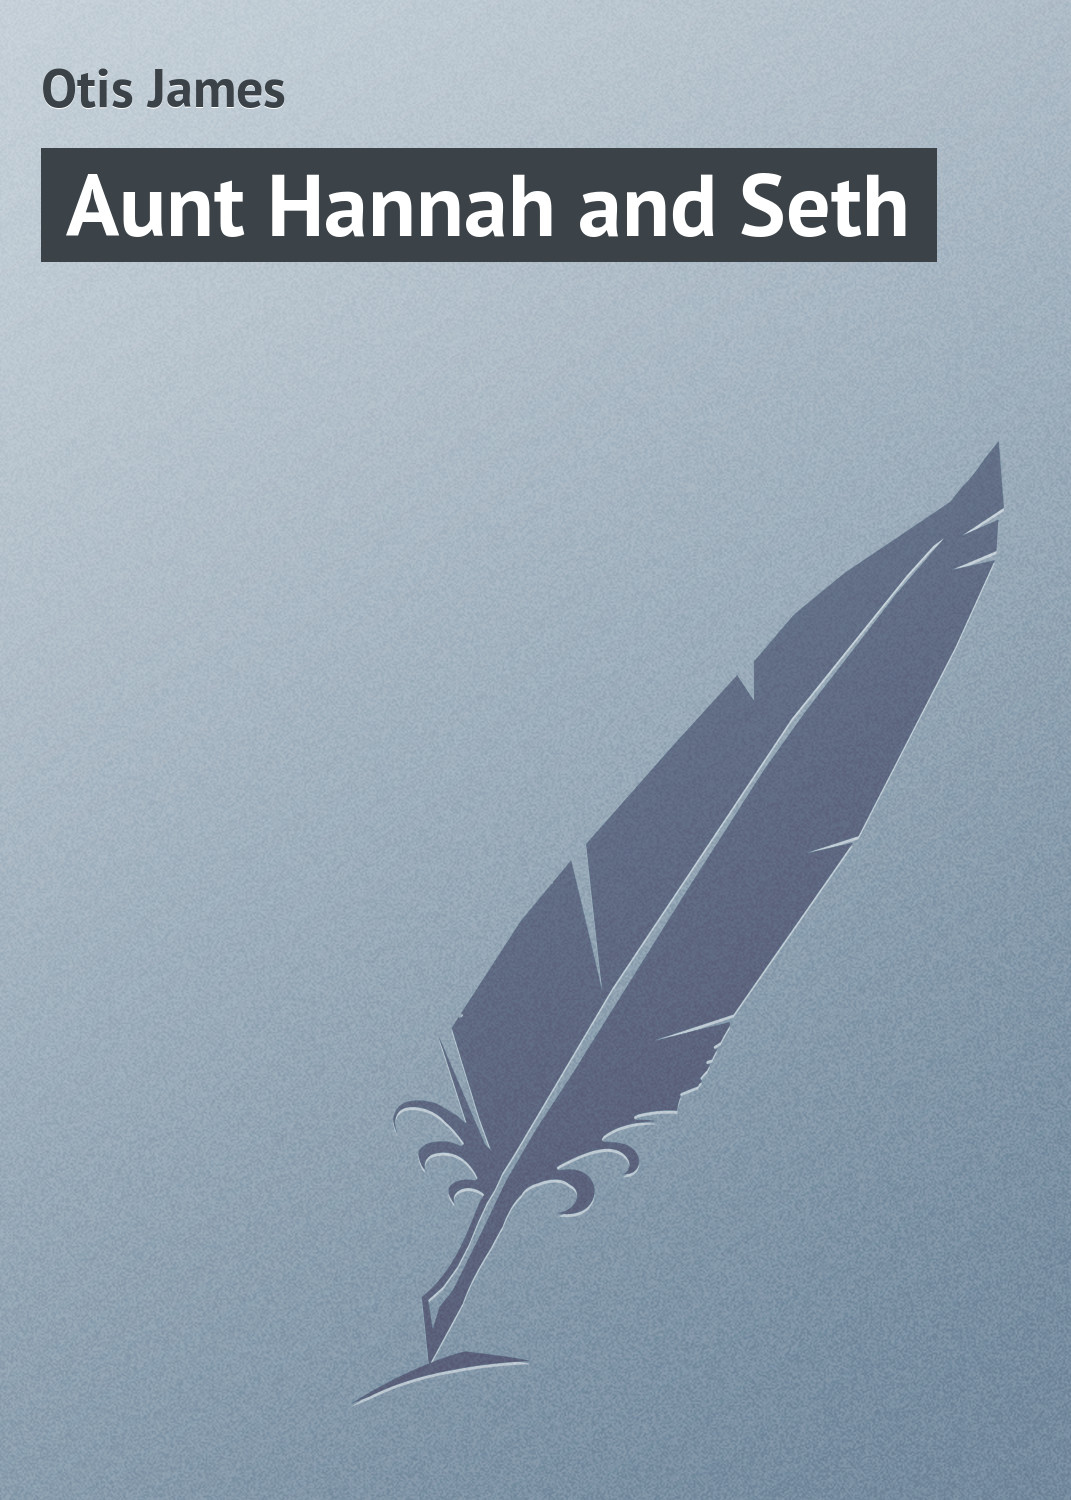 Книга Aunt Hannah and Seth из серии , созданная James Otis, может относится к жанру Зарубежная классика, Зарубежные детские книги. Стоимость электронной книги Aunt Hannah and Seth с идентификатором 23164747 составляет 5.99 руб.